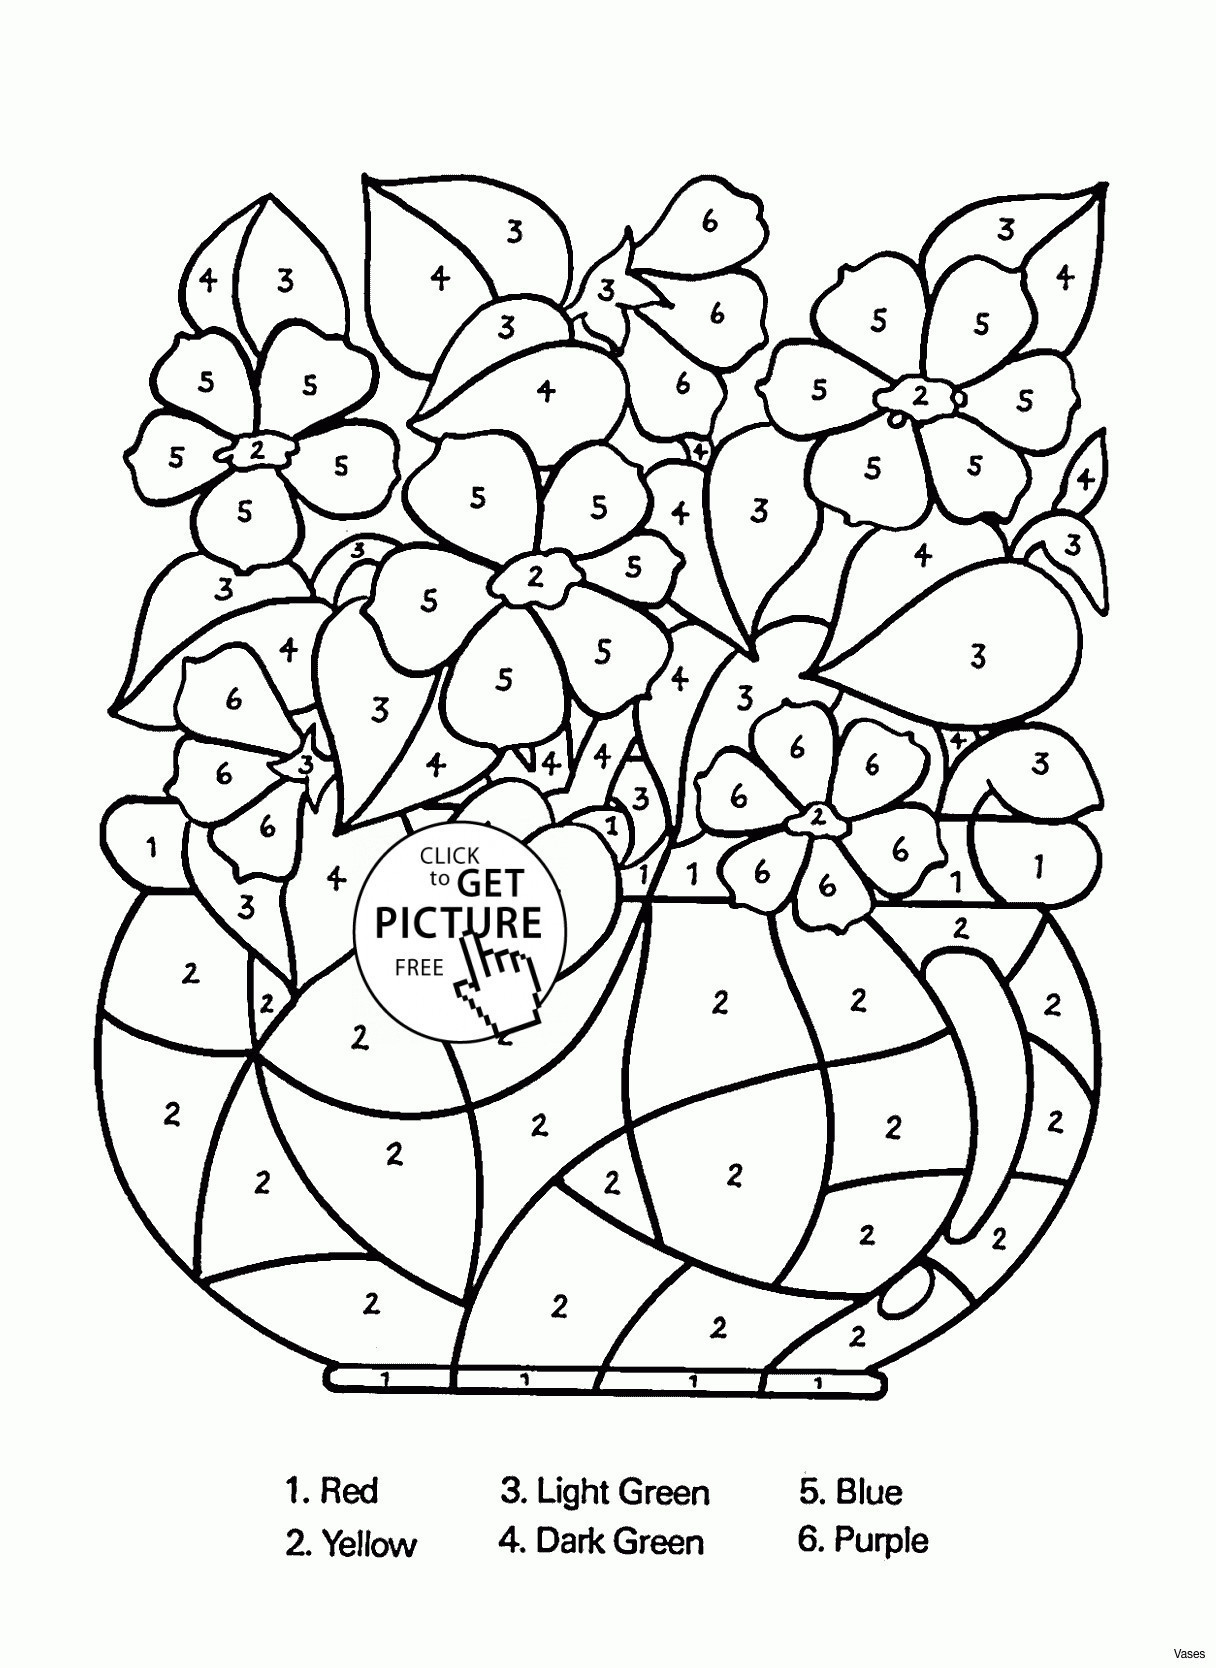 Black and White Vase Set Of 10 Fresh Black Marble Vase Bogekompresorturkiye Com Intended for Cool Vases Flower Vase Coloring Page Pages Flowers In A top I 0d Scheme Meanings